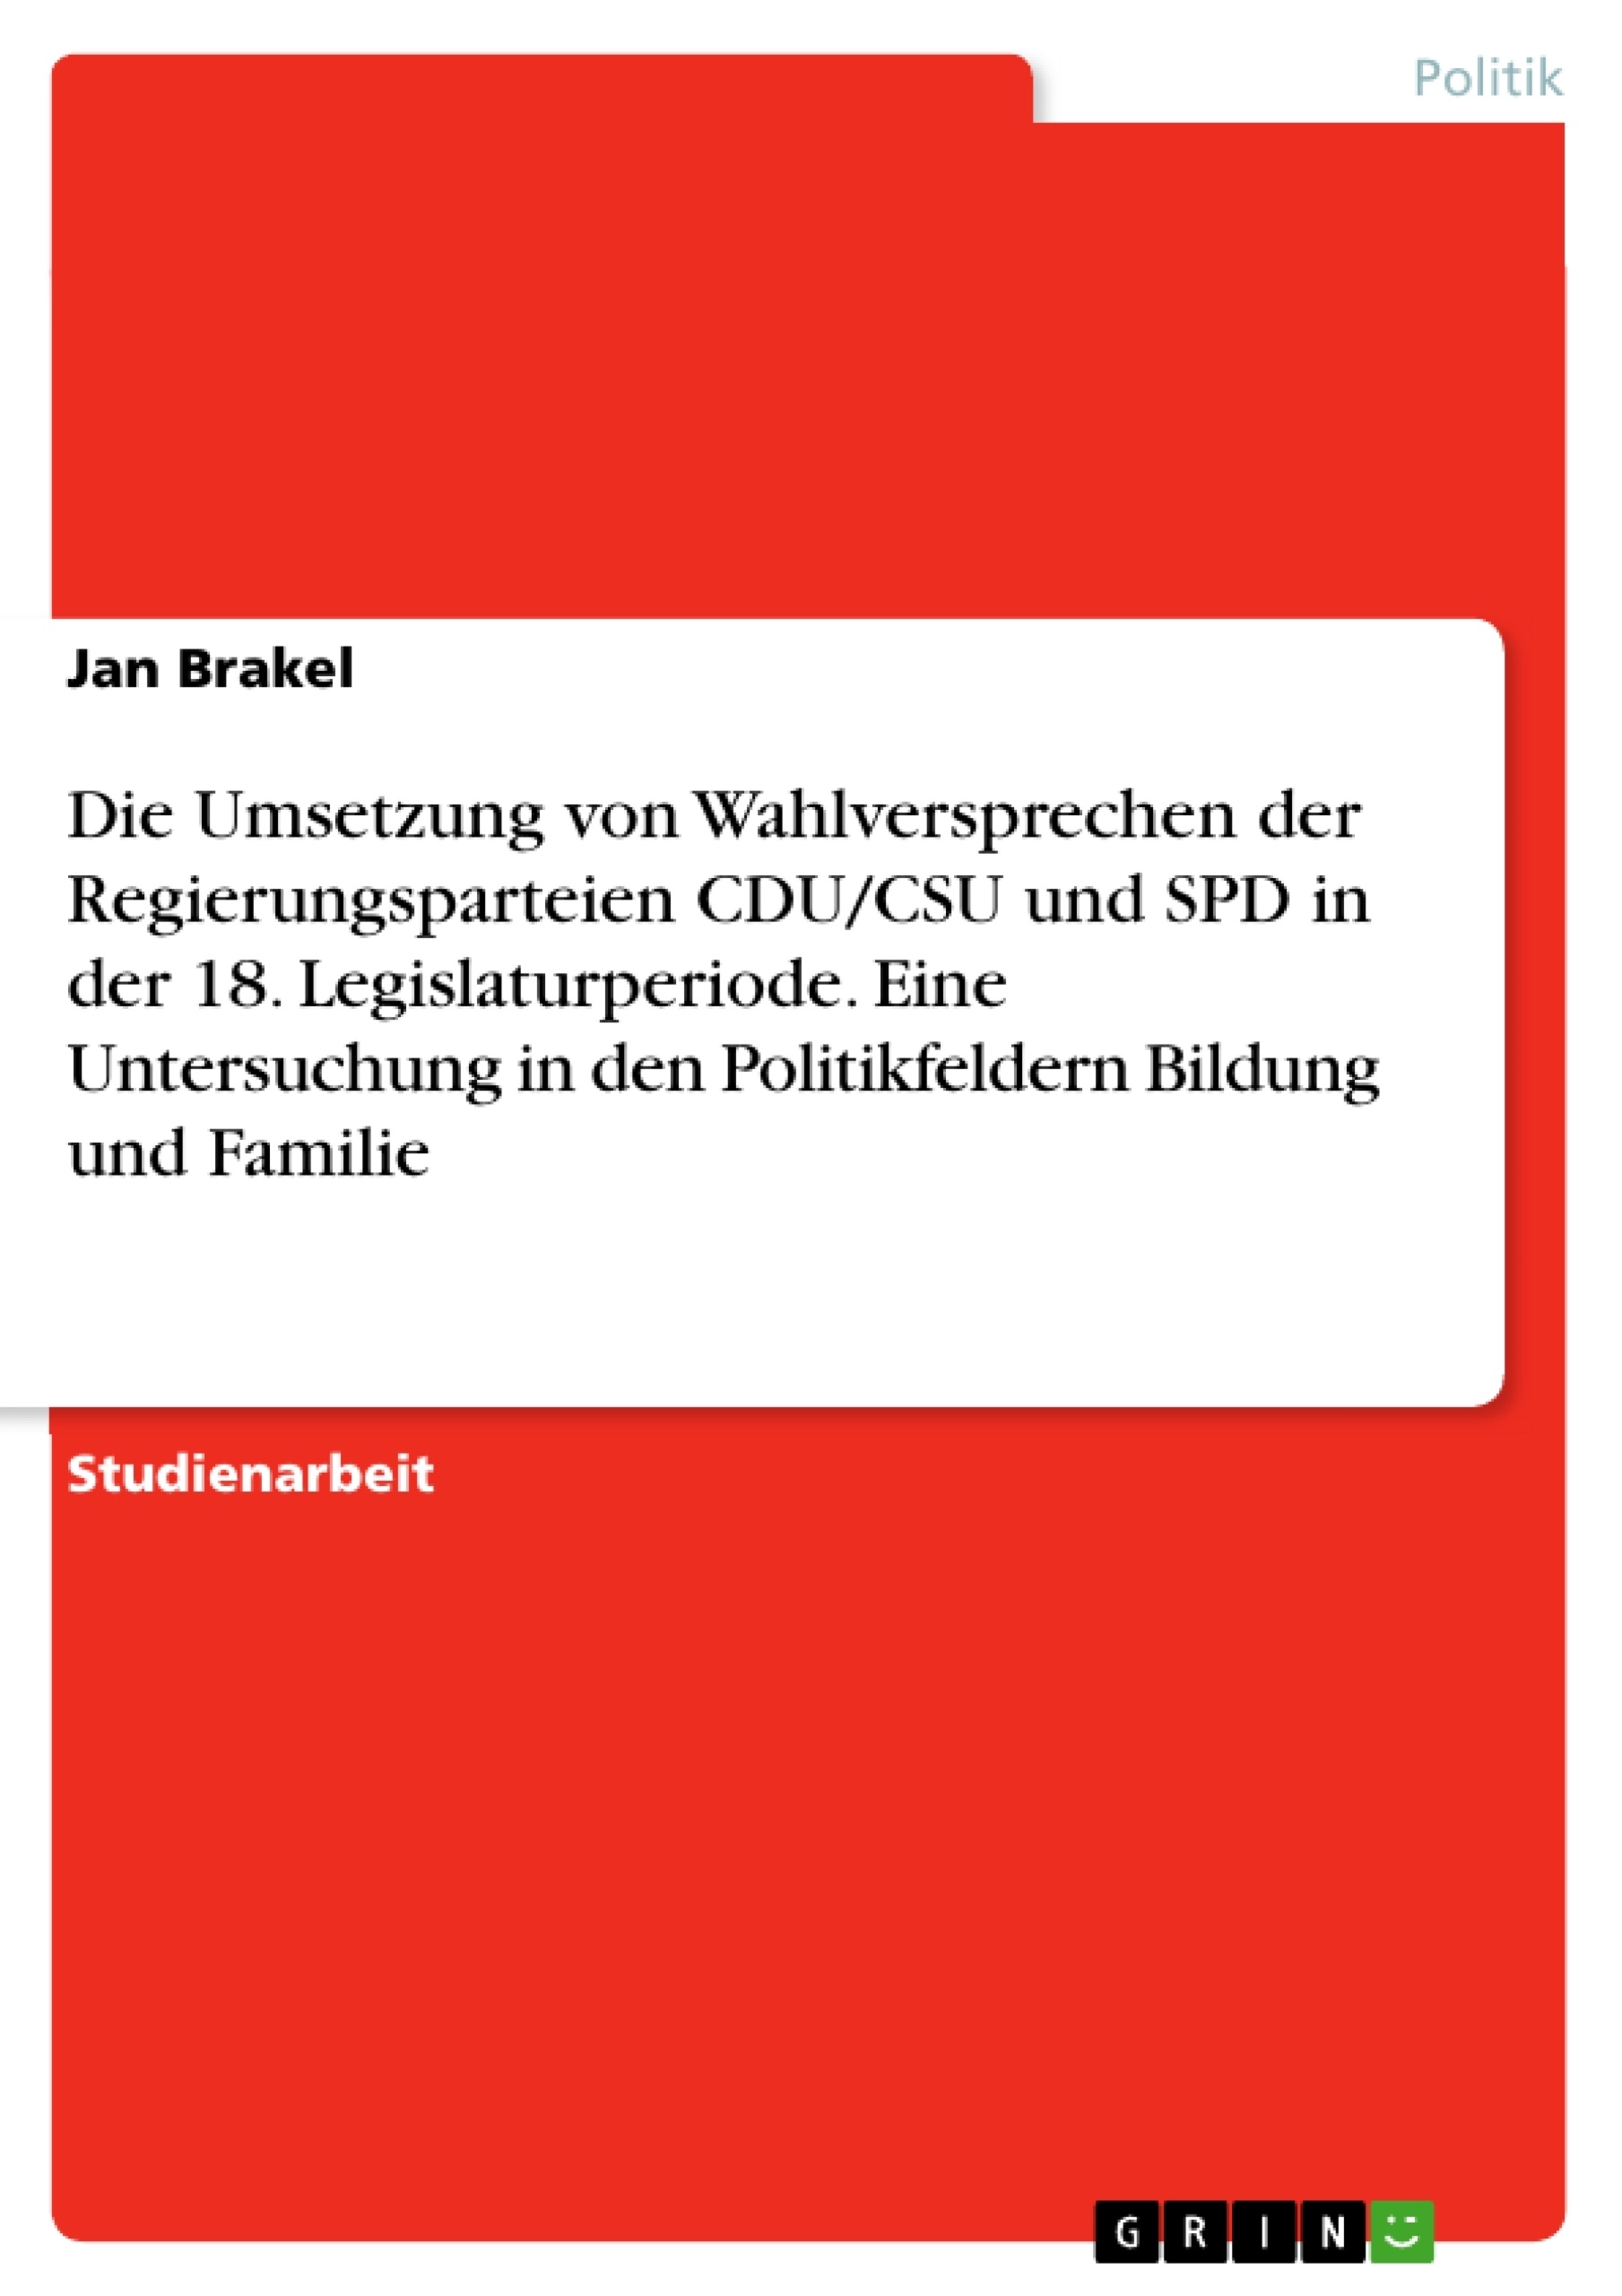 Título: Die Umsetzung von Wahlversprechen der Regierungsparteien CDU/CSU und SPD in der 18. Legislaturperiode. Eine Untersuchung in den Politikfeldern Bildung und Familie